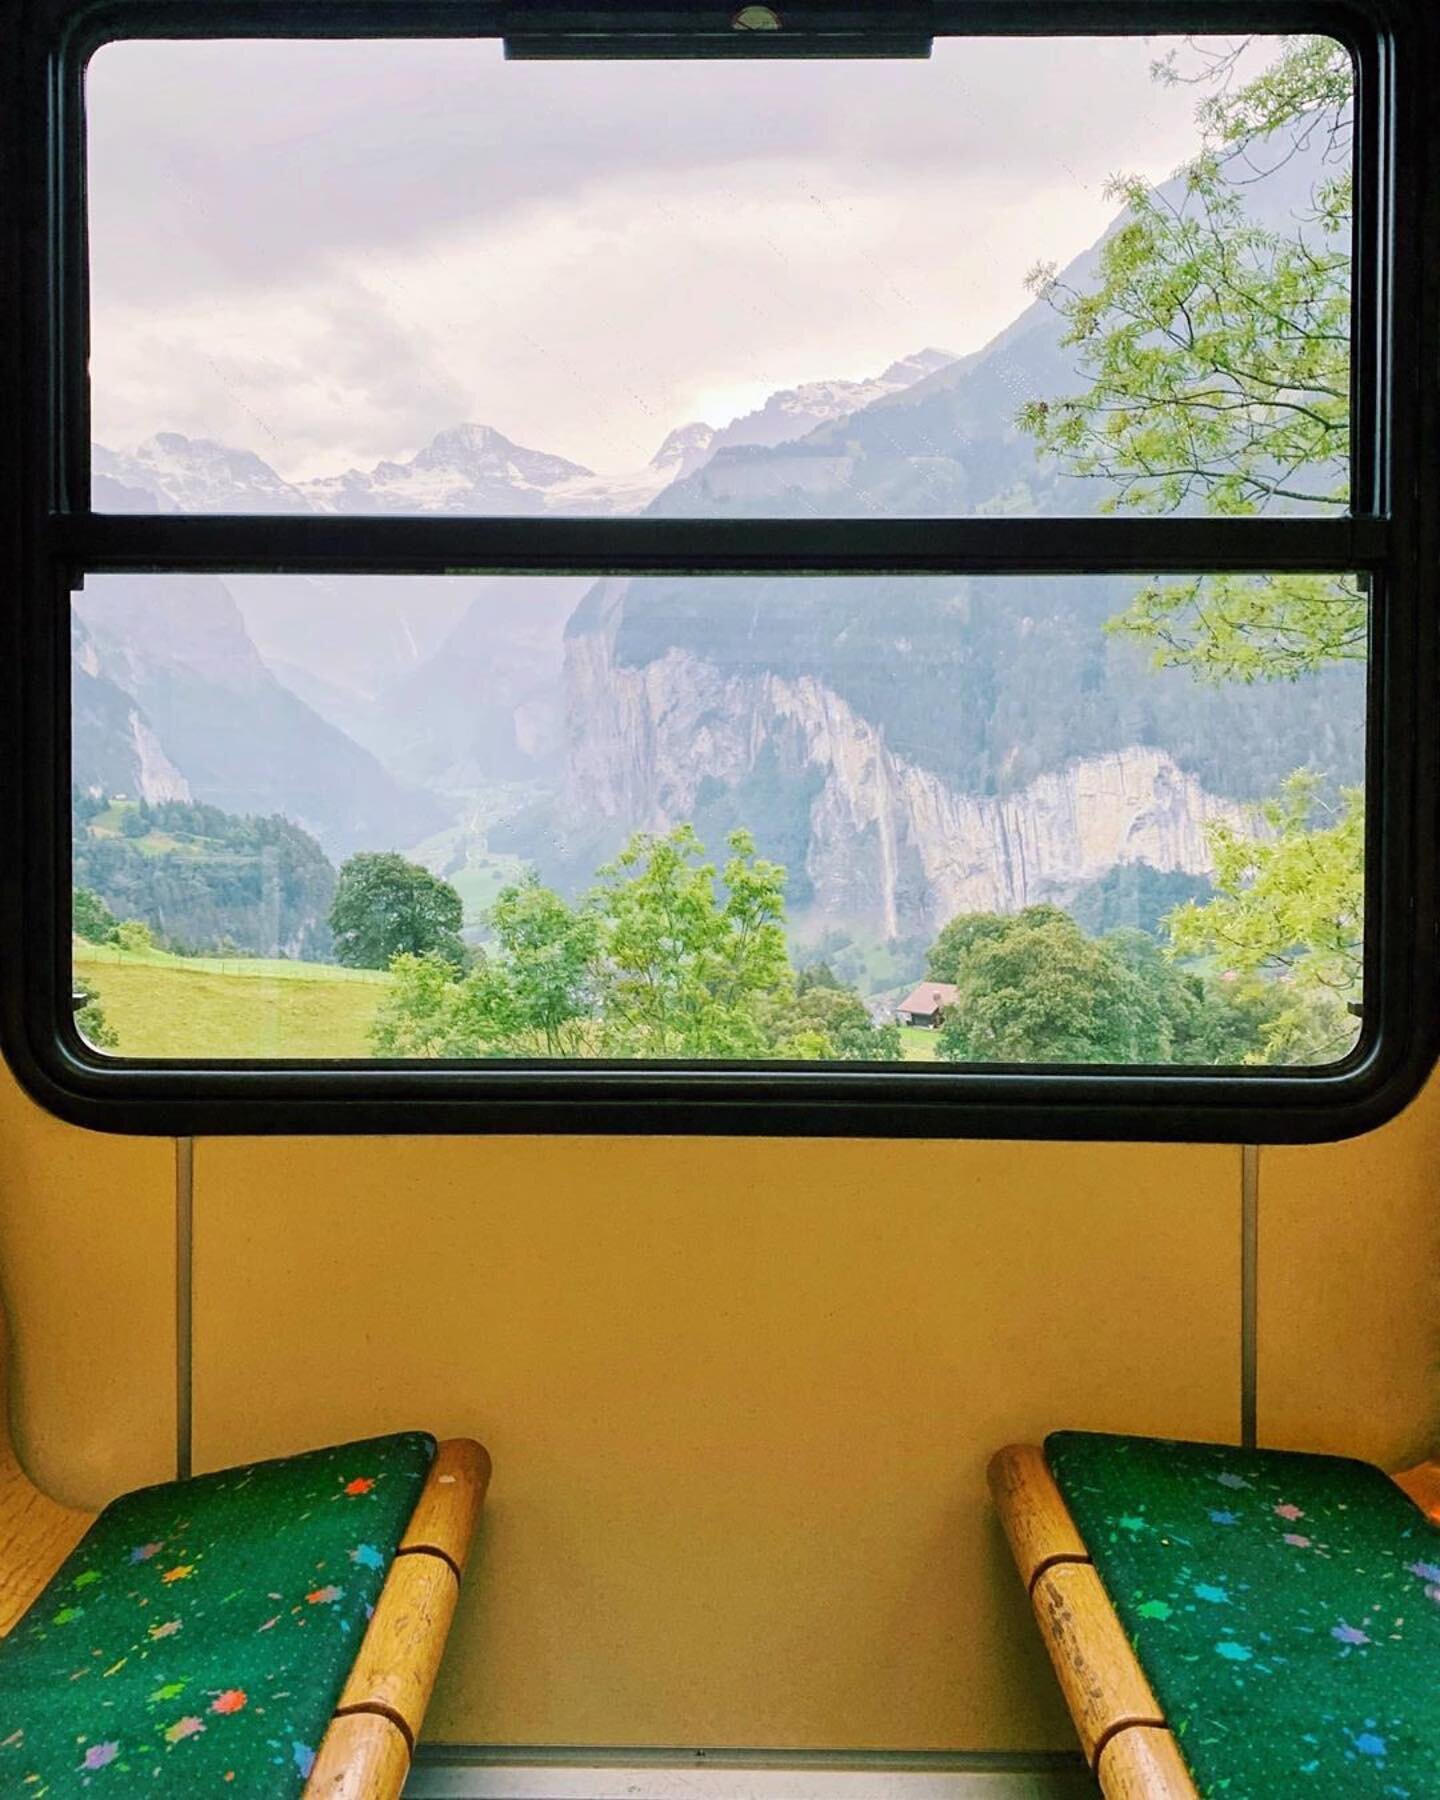 该提要从未失望过。@accidentallywesanderson・・・____________________ Wengernalp铁路Wengen Switzerlandc。1893牛;在伯恩阿尔卑斯山脉,Wengernalp铁路蜿蜒穿越Kleine Scheidegg山口,